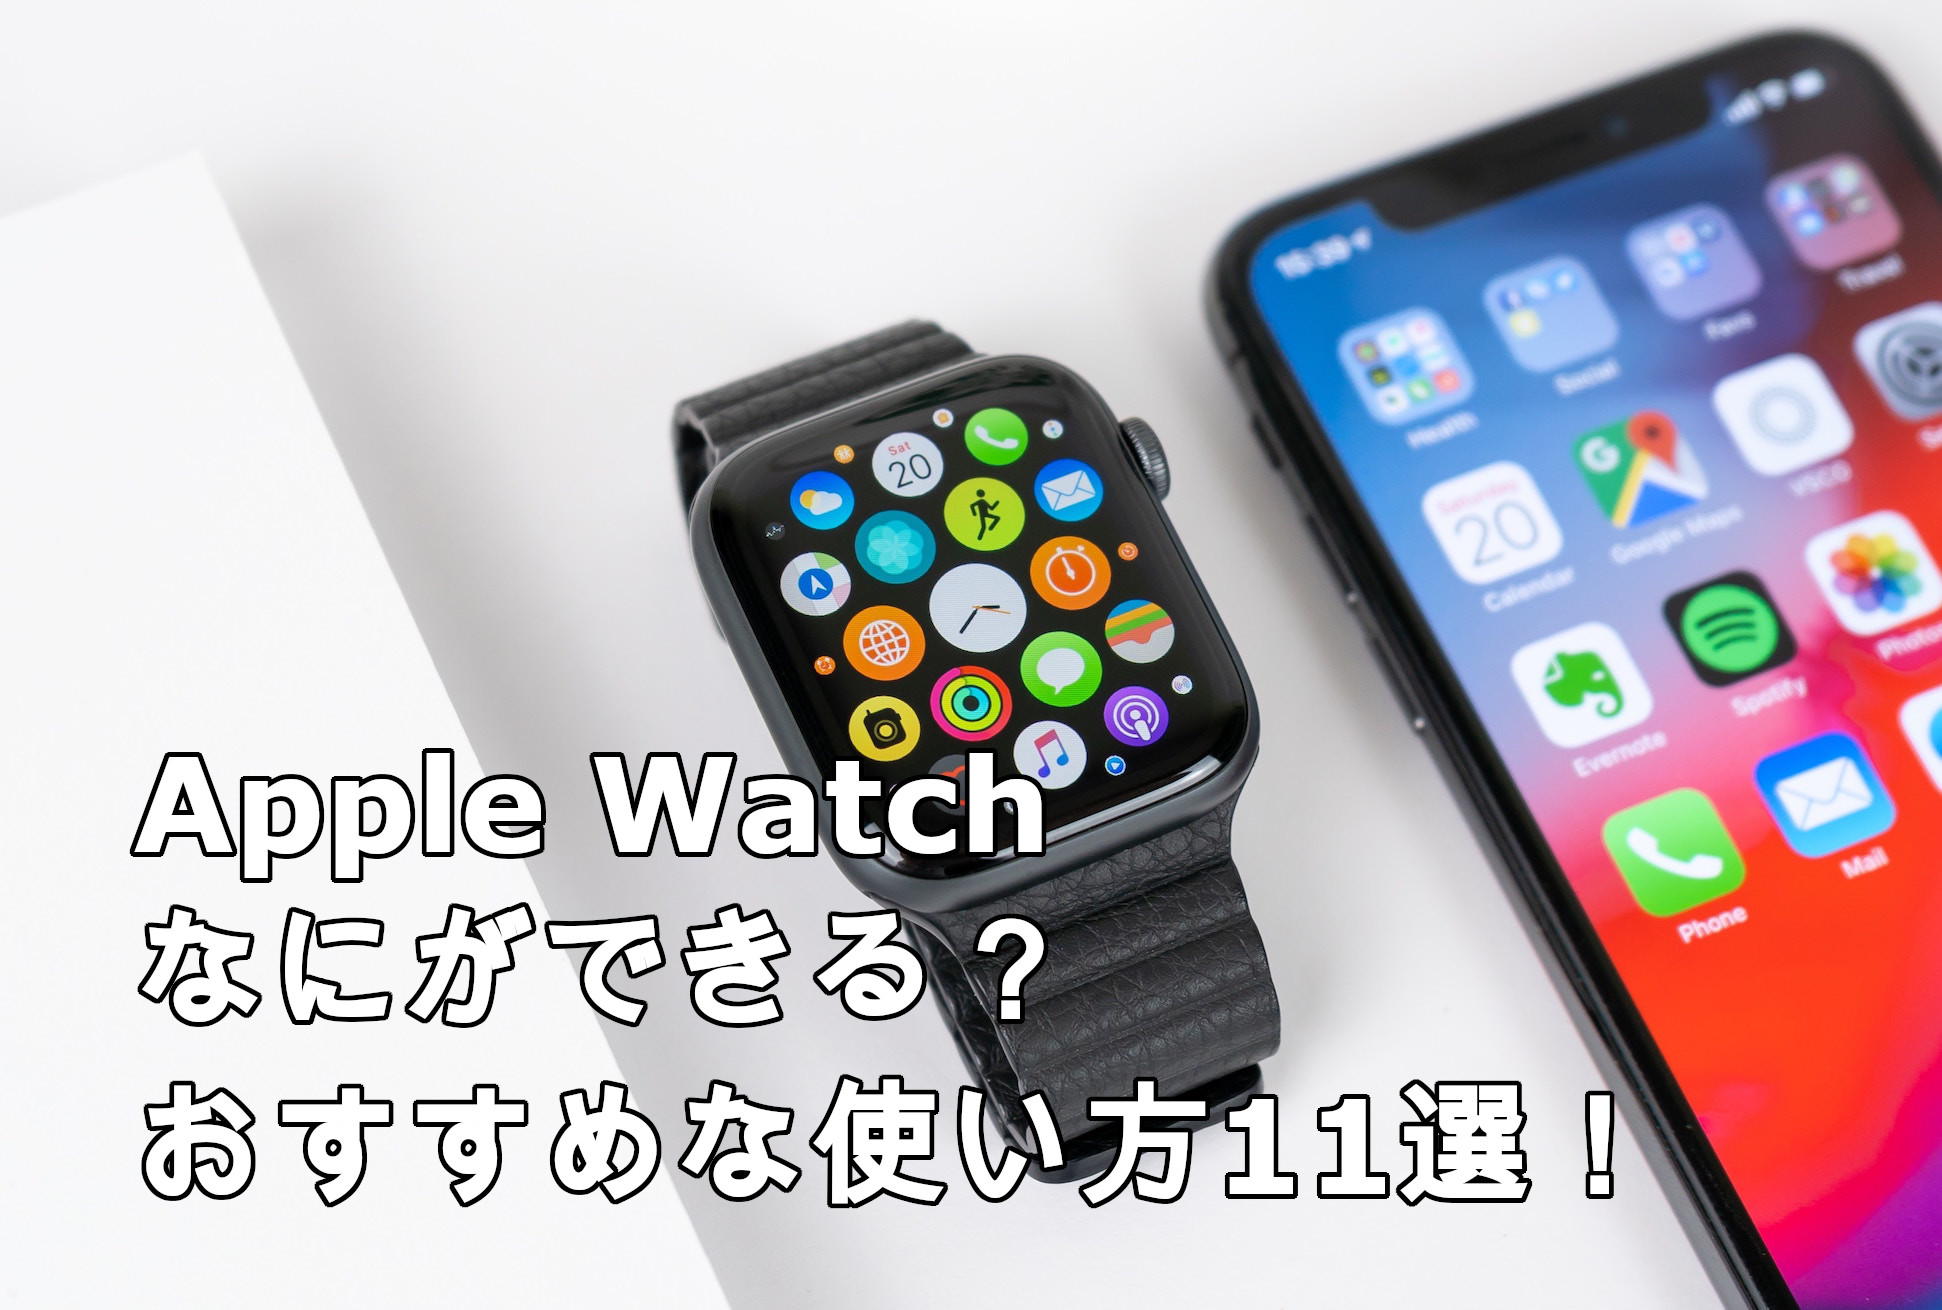 Apple Watch なにができる おすすめな使い方11選 Devicenavi デバイスナビ